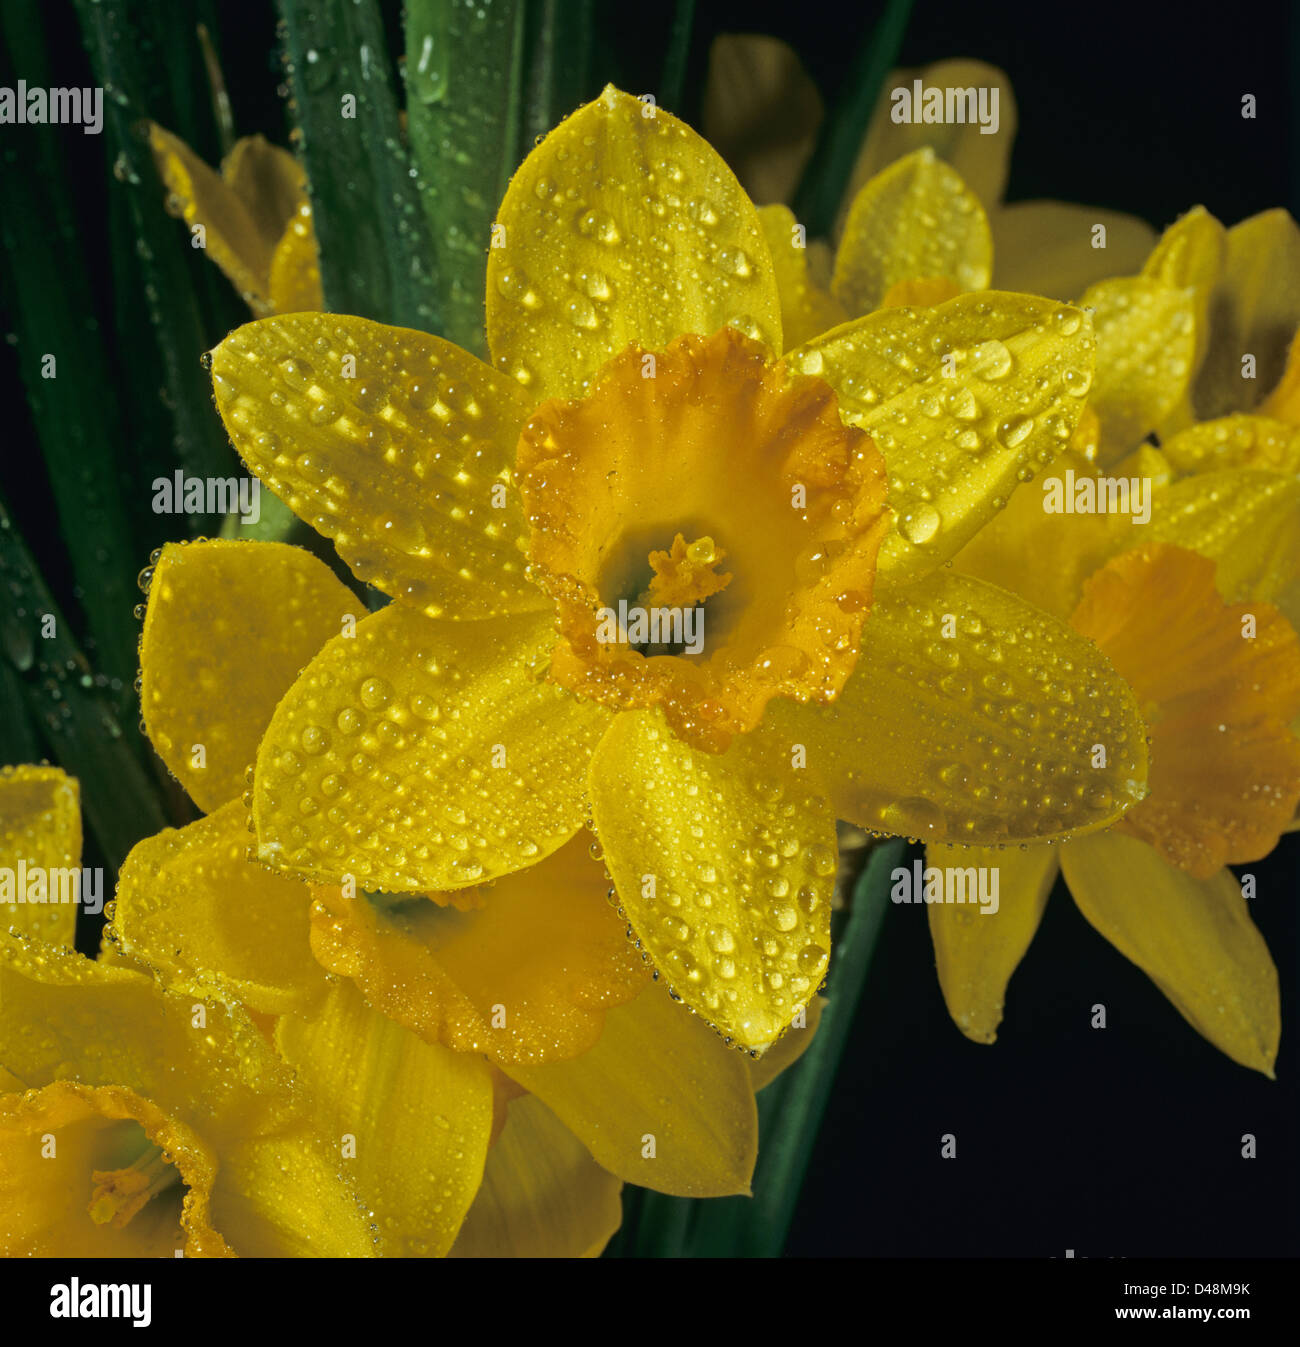 Rugiadoso goccioline di acqua su un giallo daffodil, narcisi, fiore Foto Stock